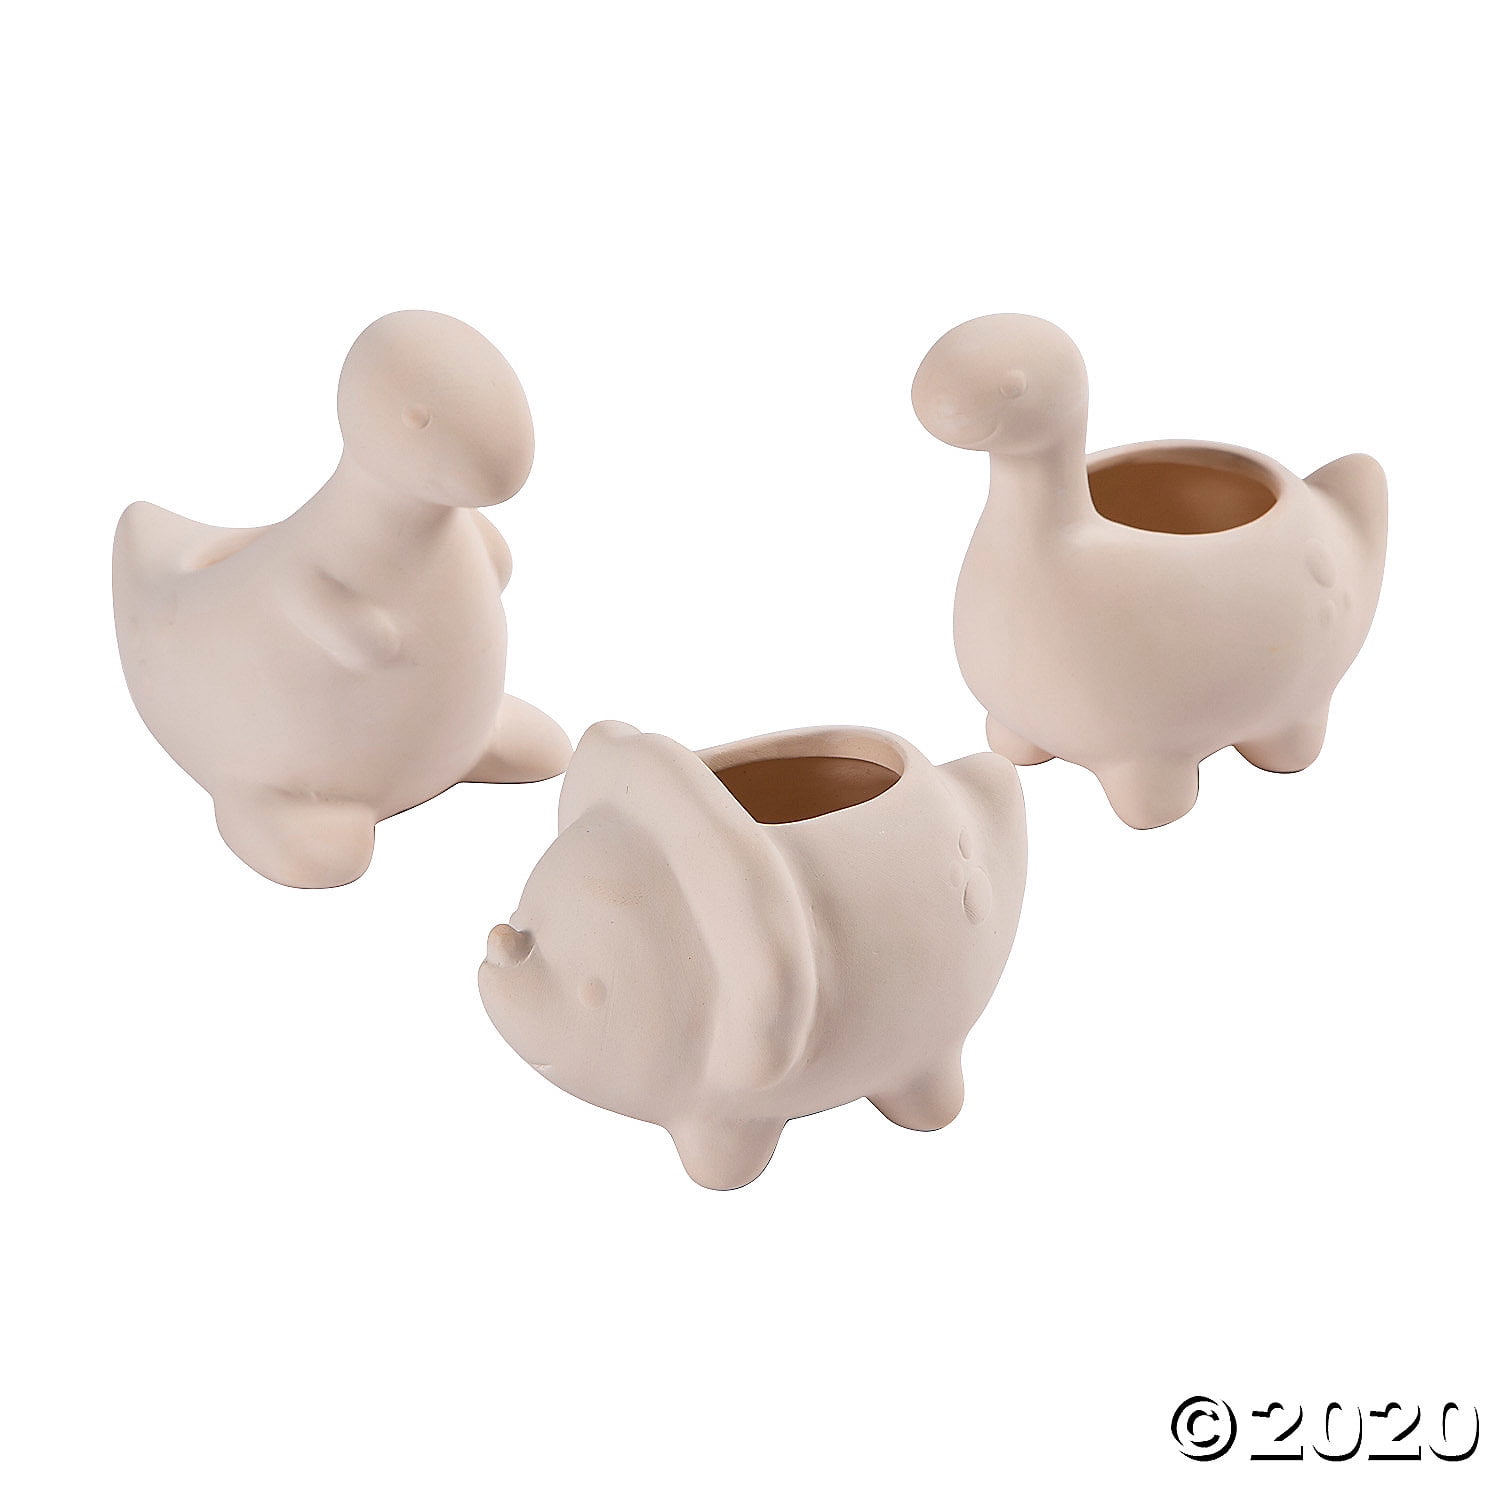 dino plant pot Unique ceramic dino mini planter multipurpose dino hand sculptured bowl